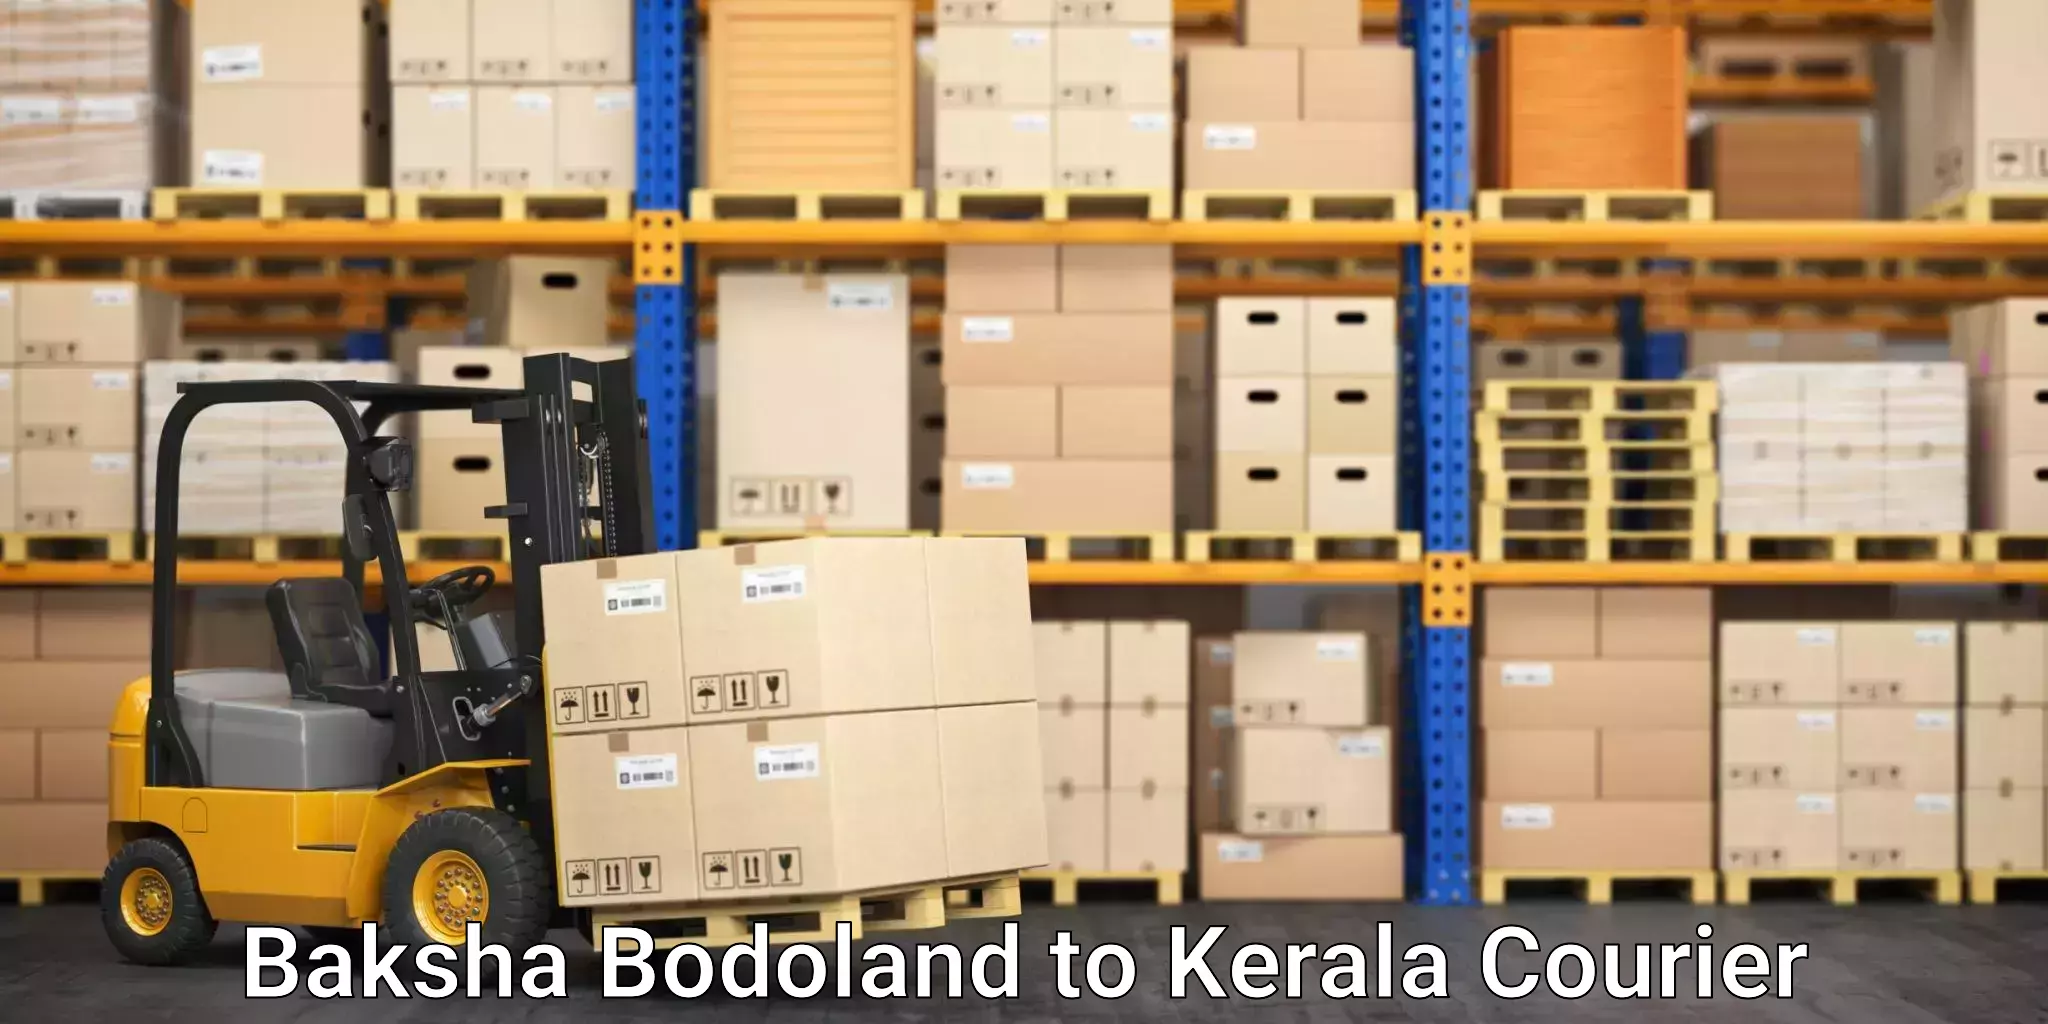 Efficient parcel delivery Baksha Bodoland to Thrissur